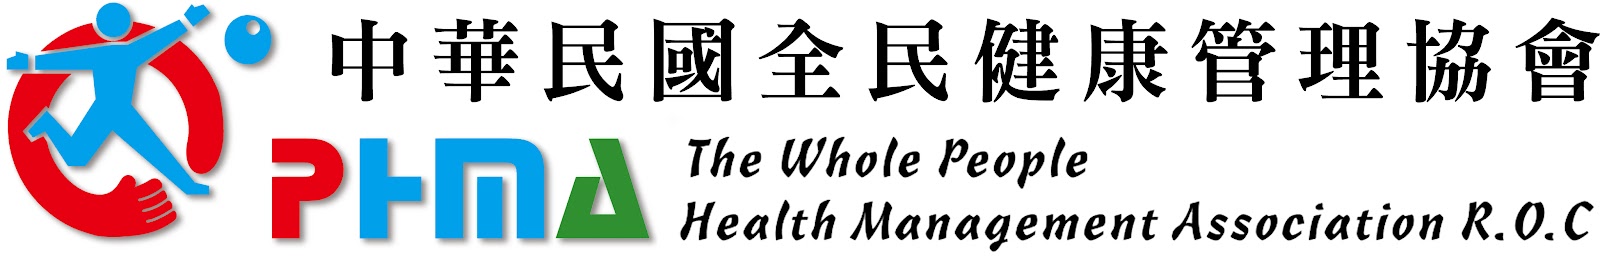 中華民國全民健康管理協會